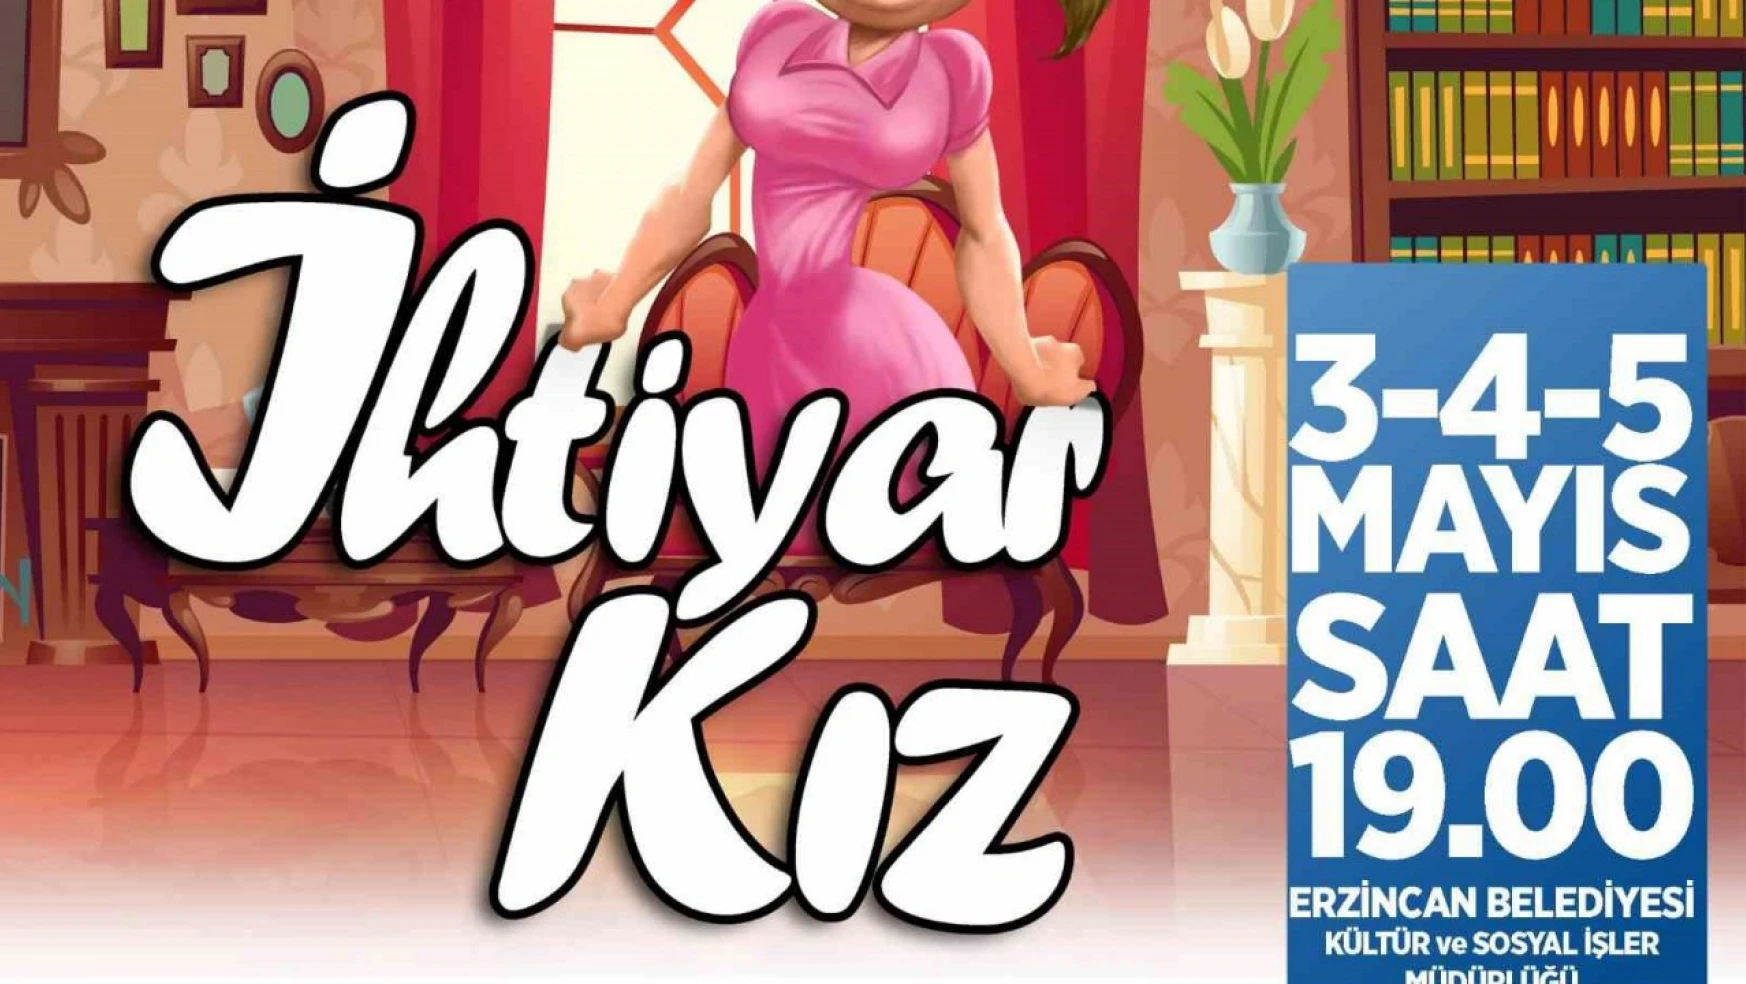 Erzincan'da 'İhtiyar Kız' isimli komedi oyunu sahnelenecek